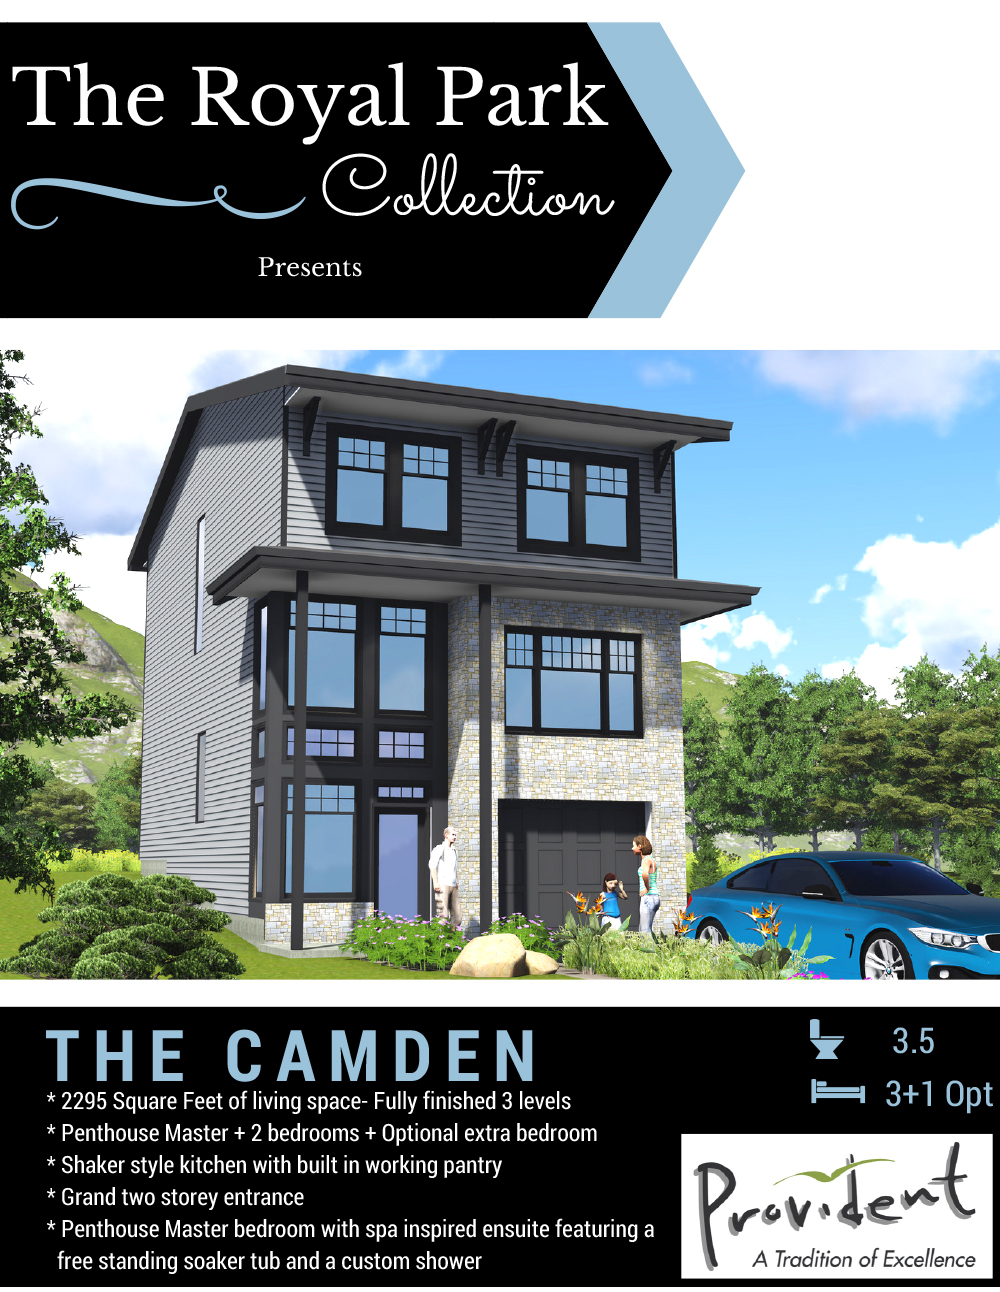 The Camden